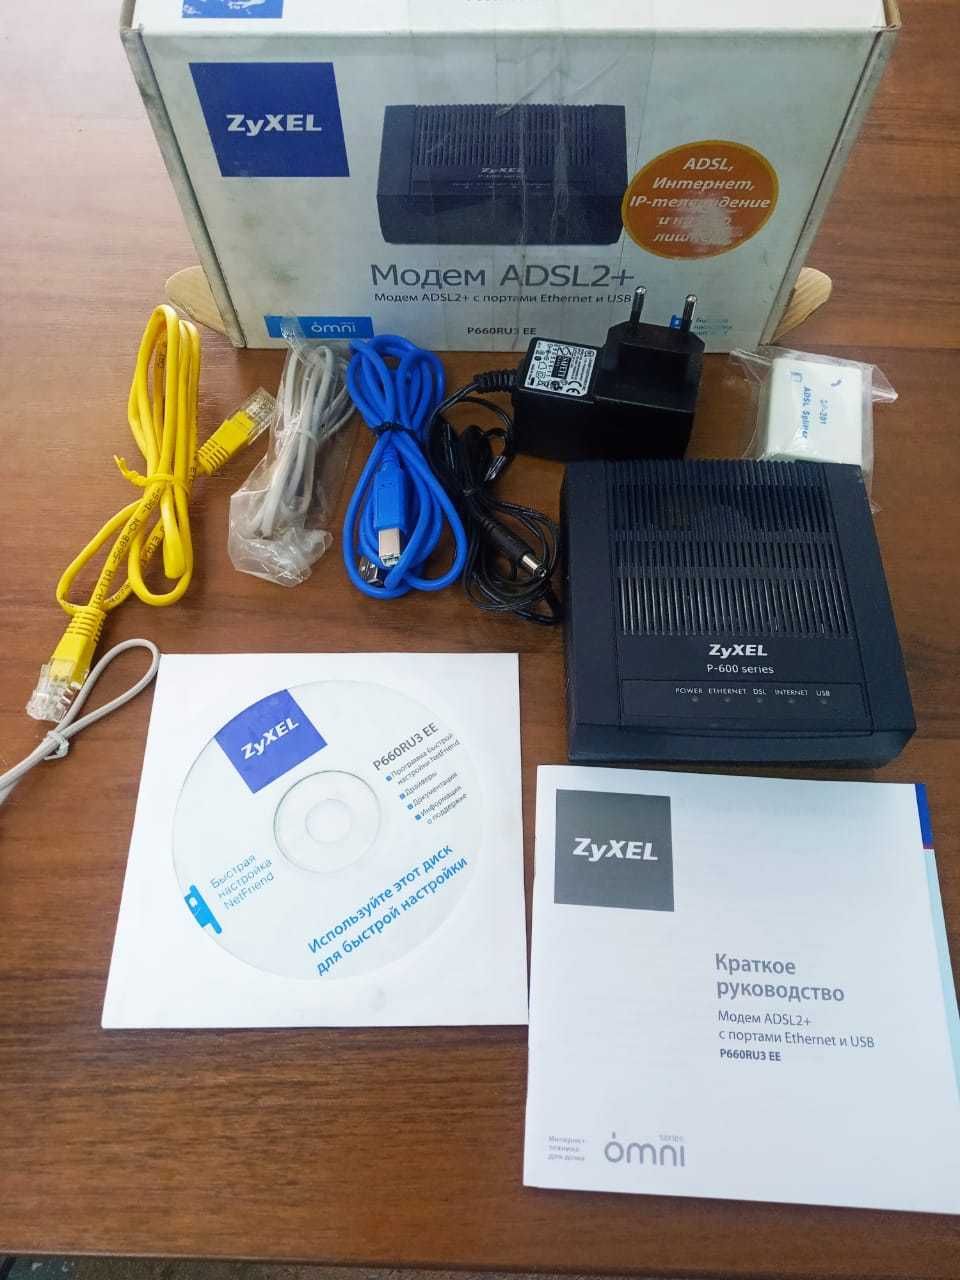 Модем ADSL2+ P660RU3 EE